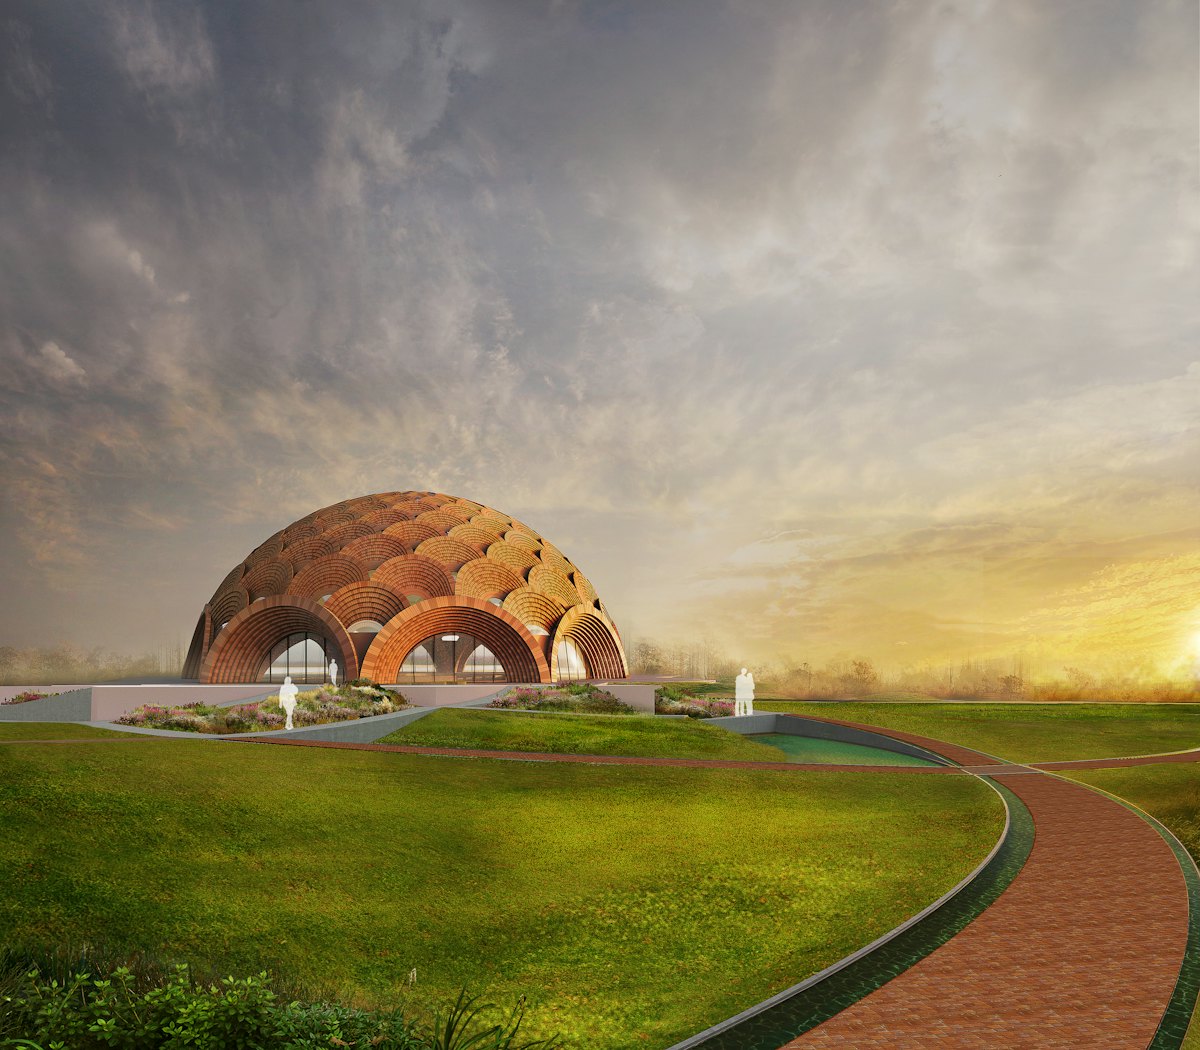 Le plan architectural de la nouvelle maison d’adoration bahá’íe à Bihar Sharif a été dévoilé par l’Assemblée spirituelle des bahá’ís d’Inde.